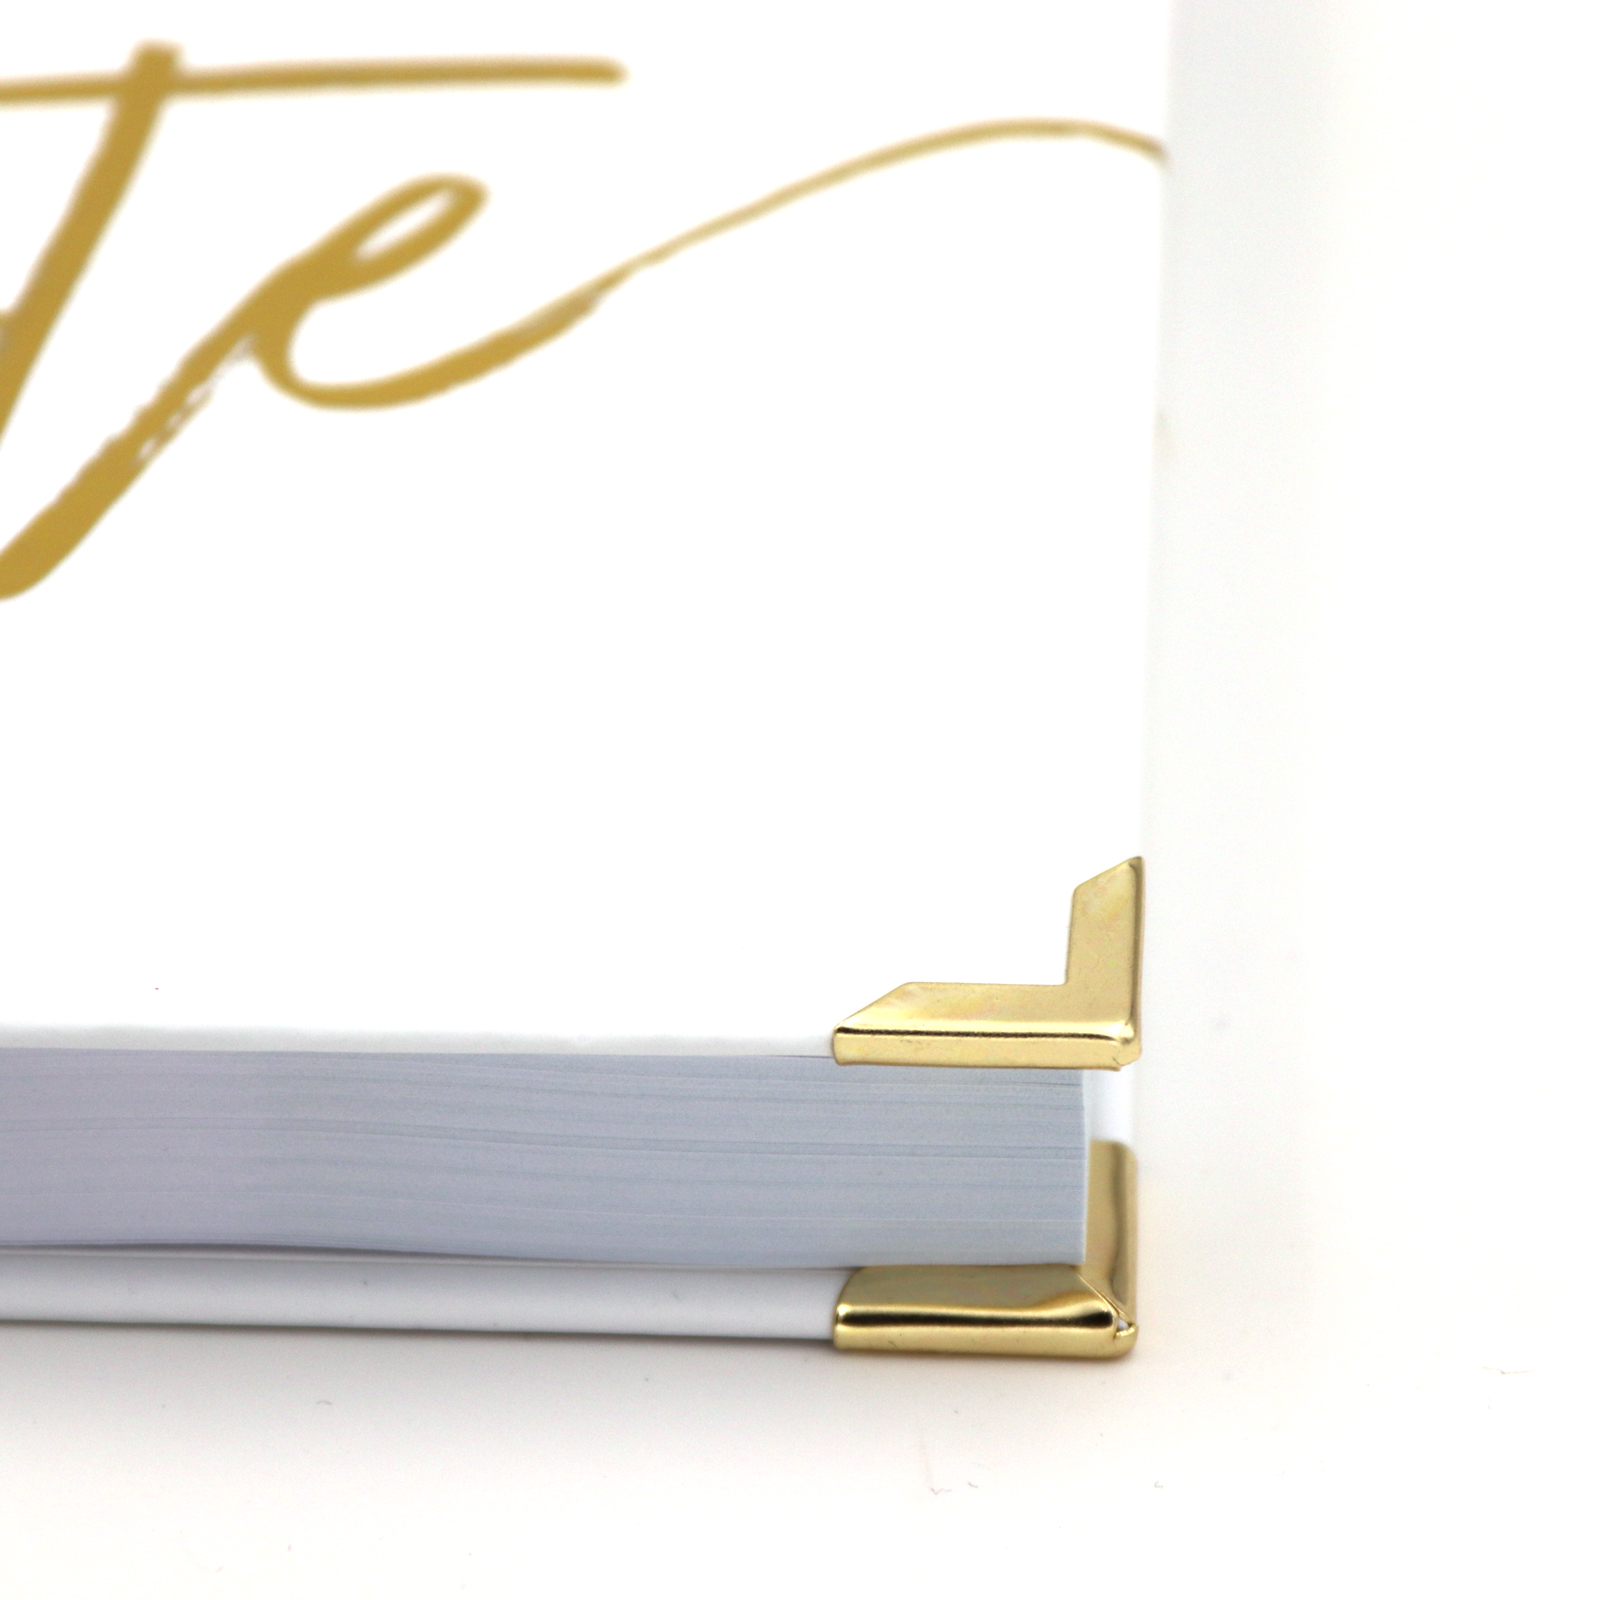 Gästebuch Hochzeit mit Fragen >Gold XL< - Hardcover + Fadenheftung - Gold Heissfolie - 200 Seiten